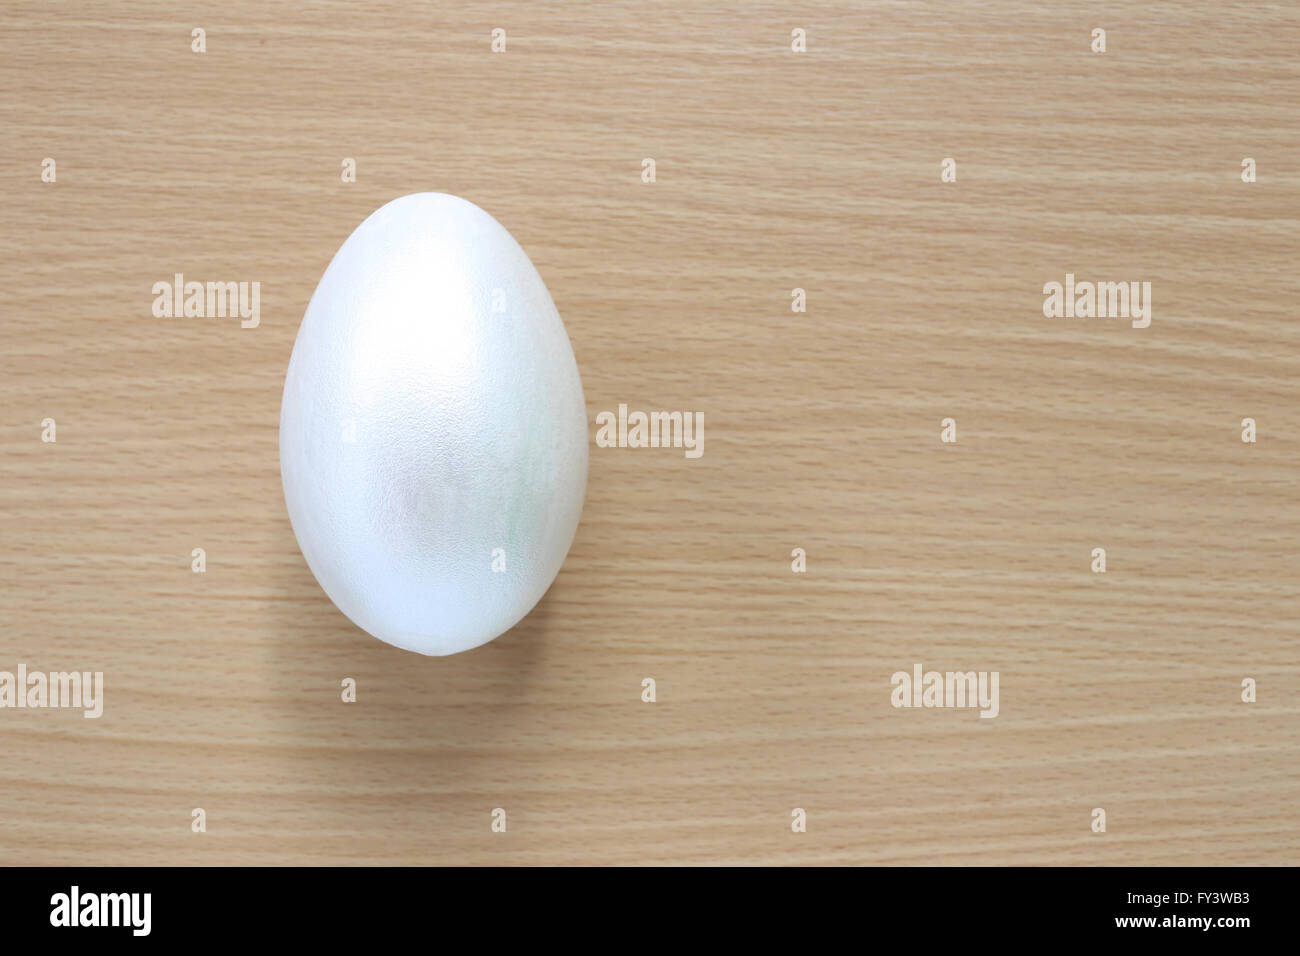 El blanco de la pascua eggson fondo de madera pintada a mano para diseño,feliz día de Pascua. Foto de stock